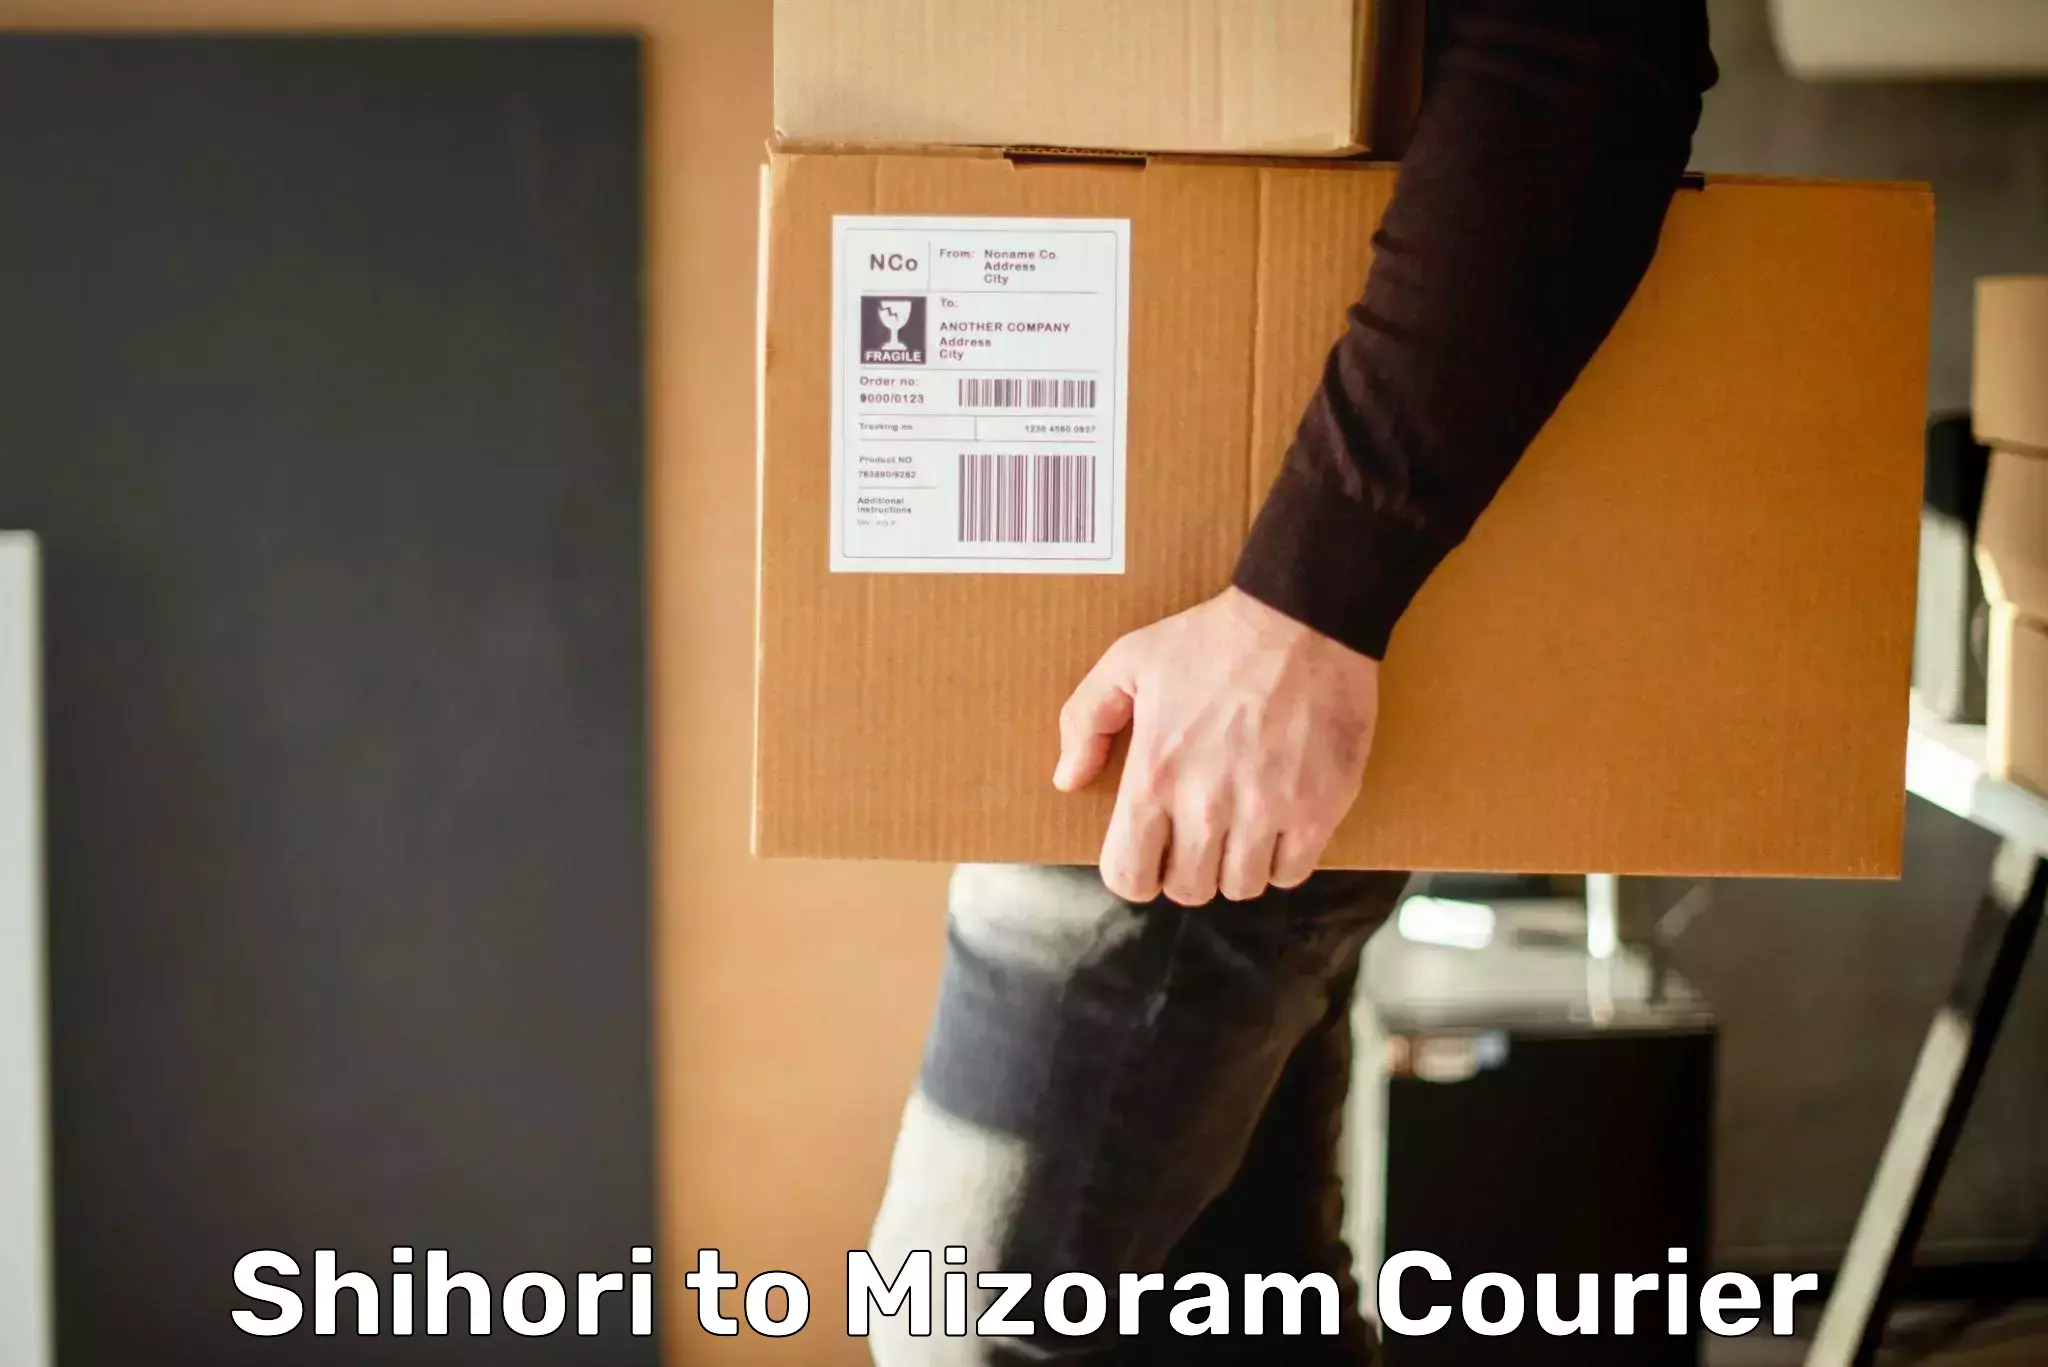 Quality courier services Shihori to Mizoram